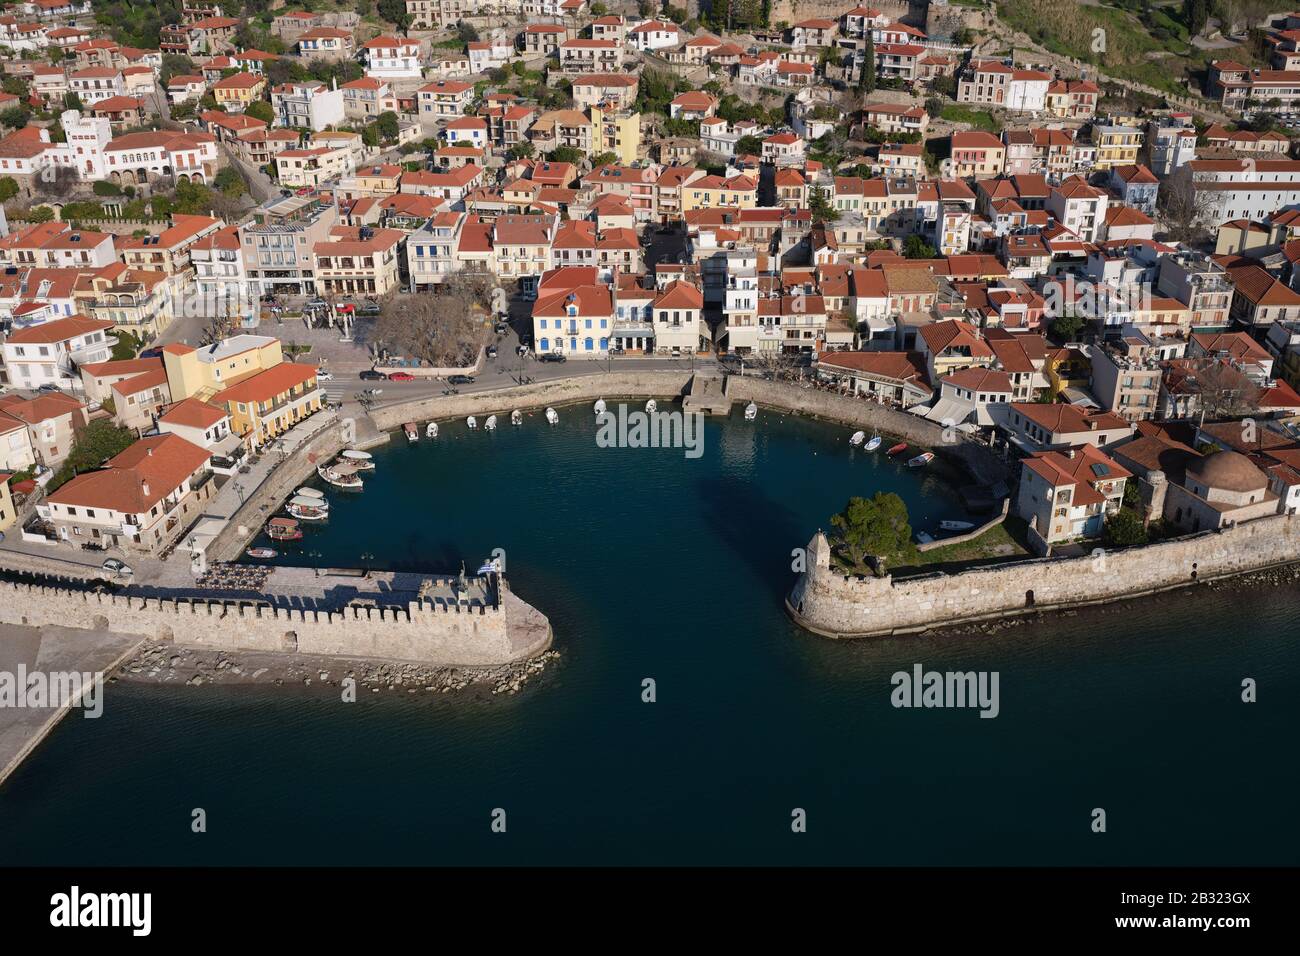 LUFTBILD. Malerische Stadt Nafpaktos mit seinem kleinen befestigten Yachthafen. Golf von Korinth, Westgriechenland, Griechenland. Stockfoto